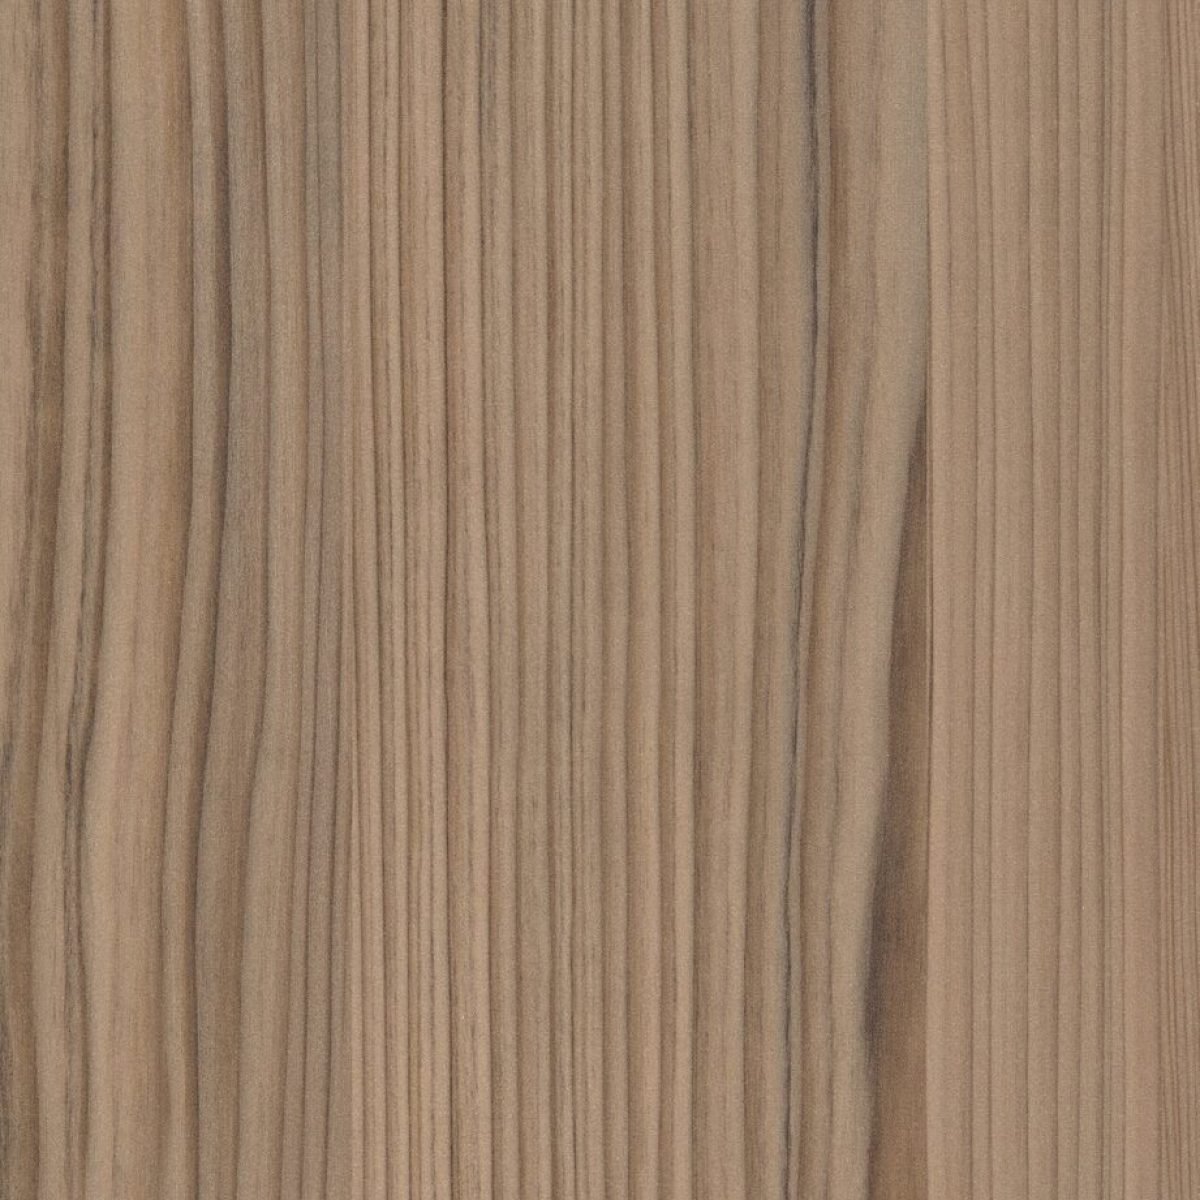 CYPRESS CINNAMON - Tamaños (1,22 x 2,44m)  |  Espesor (0.7mm)